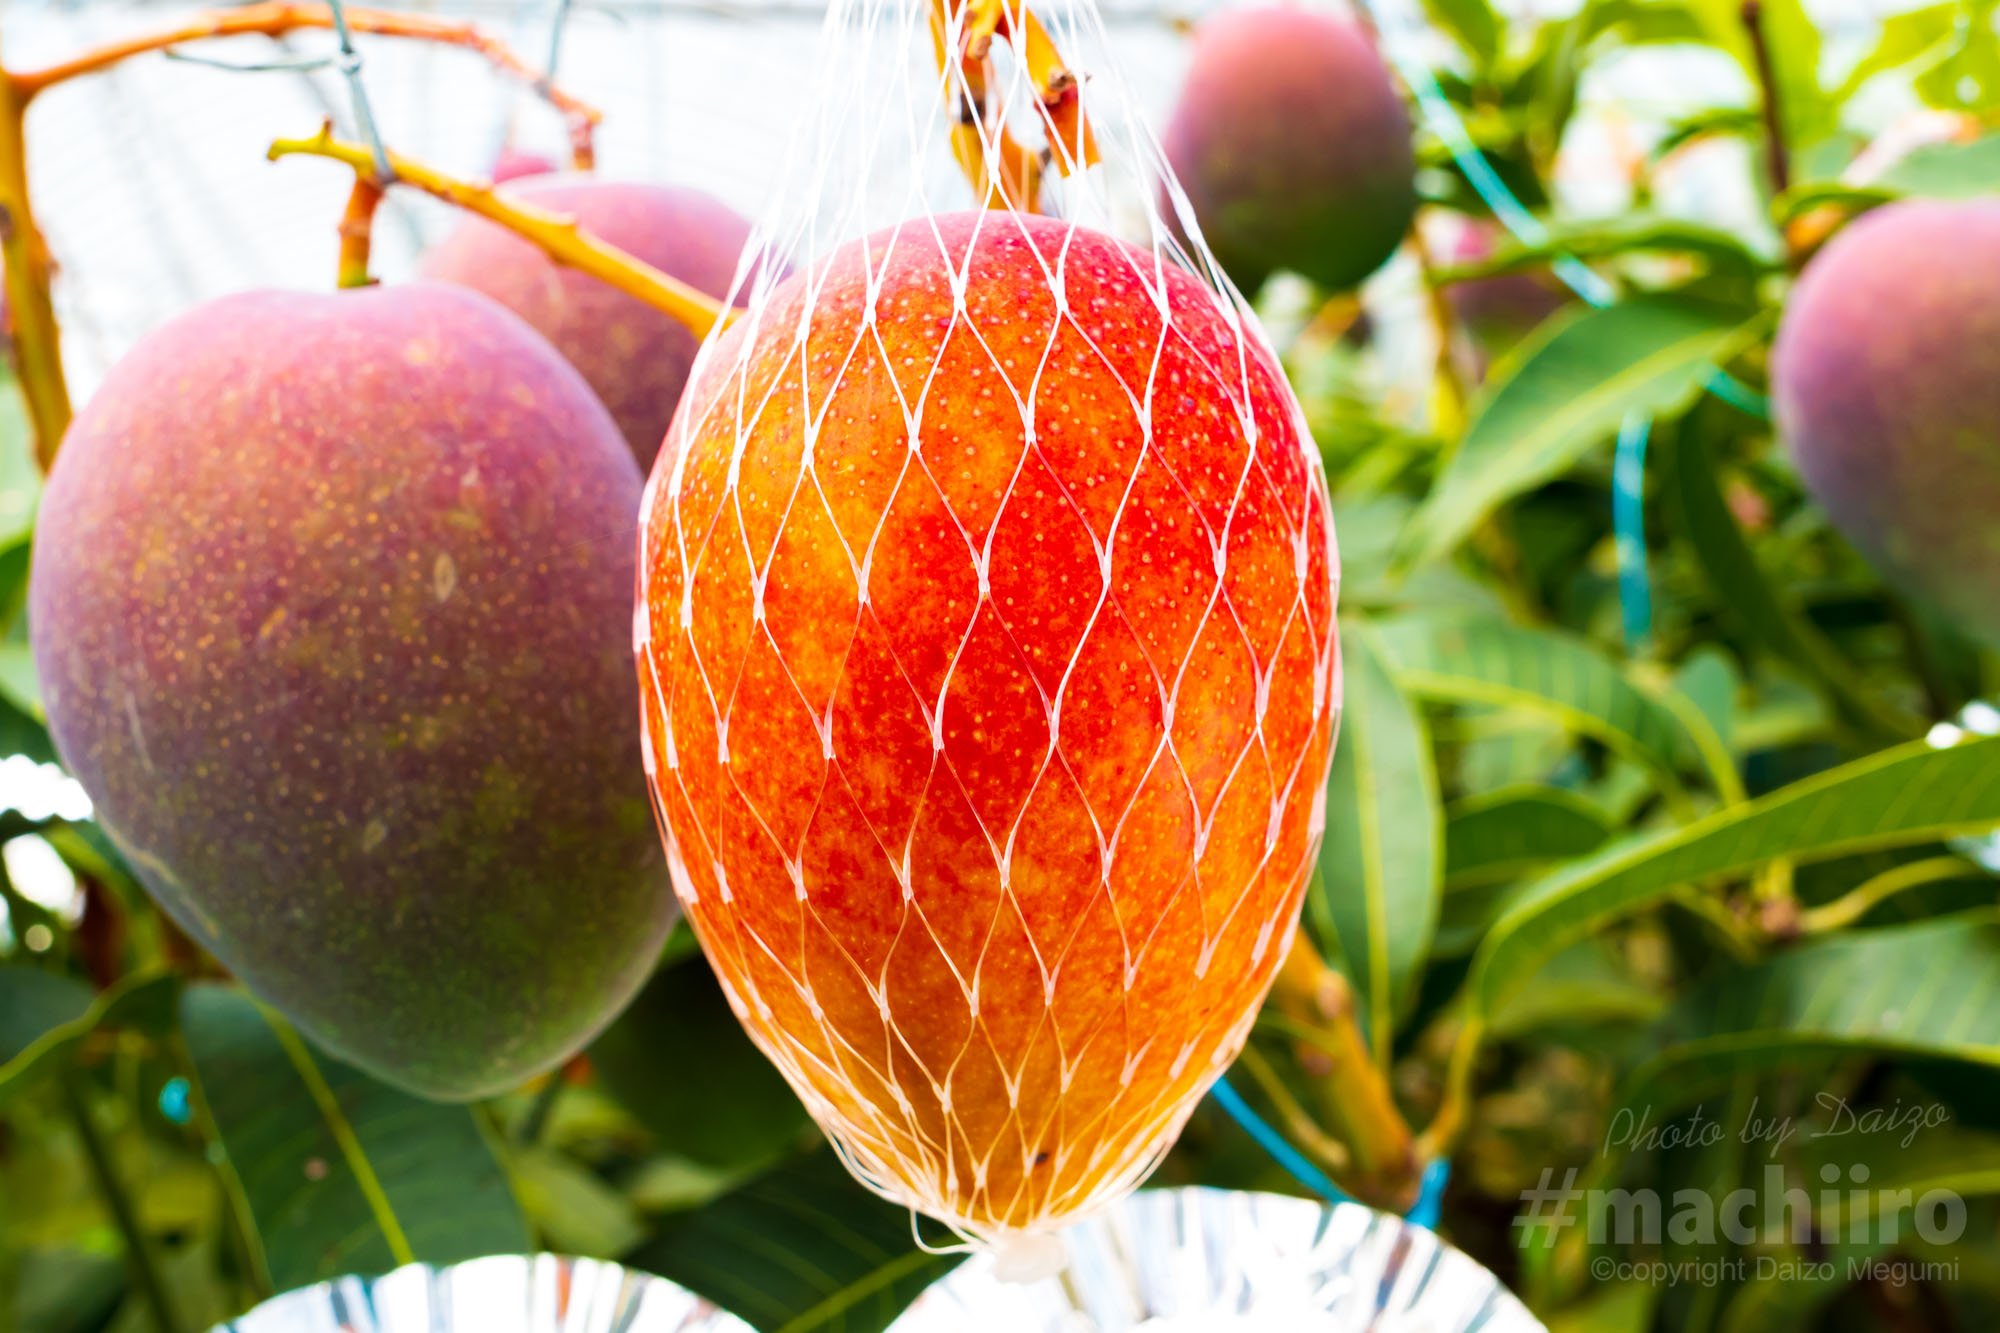 奄美フルーツファーム - 奄美の太陽の光をいっぱい浴びた美味しい 